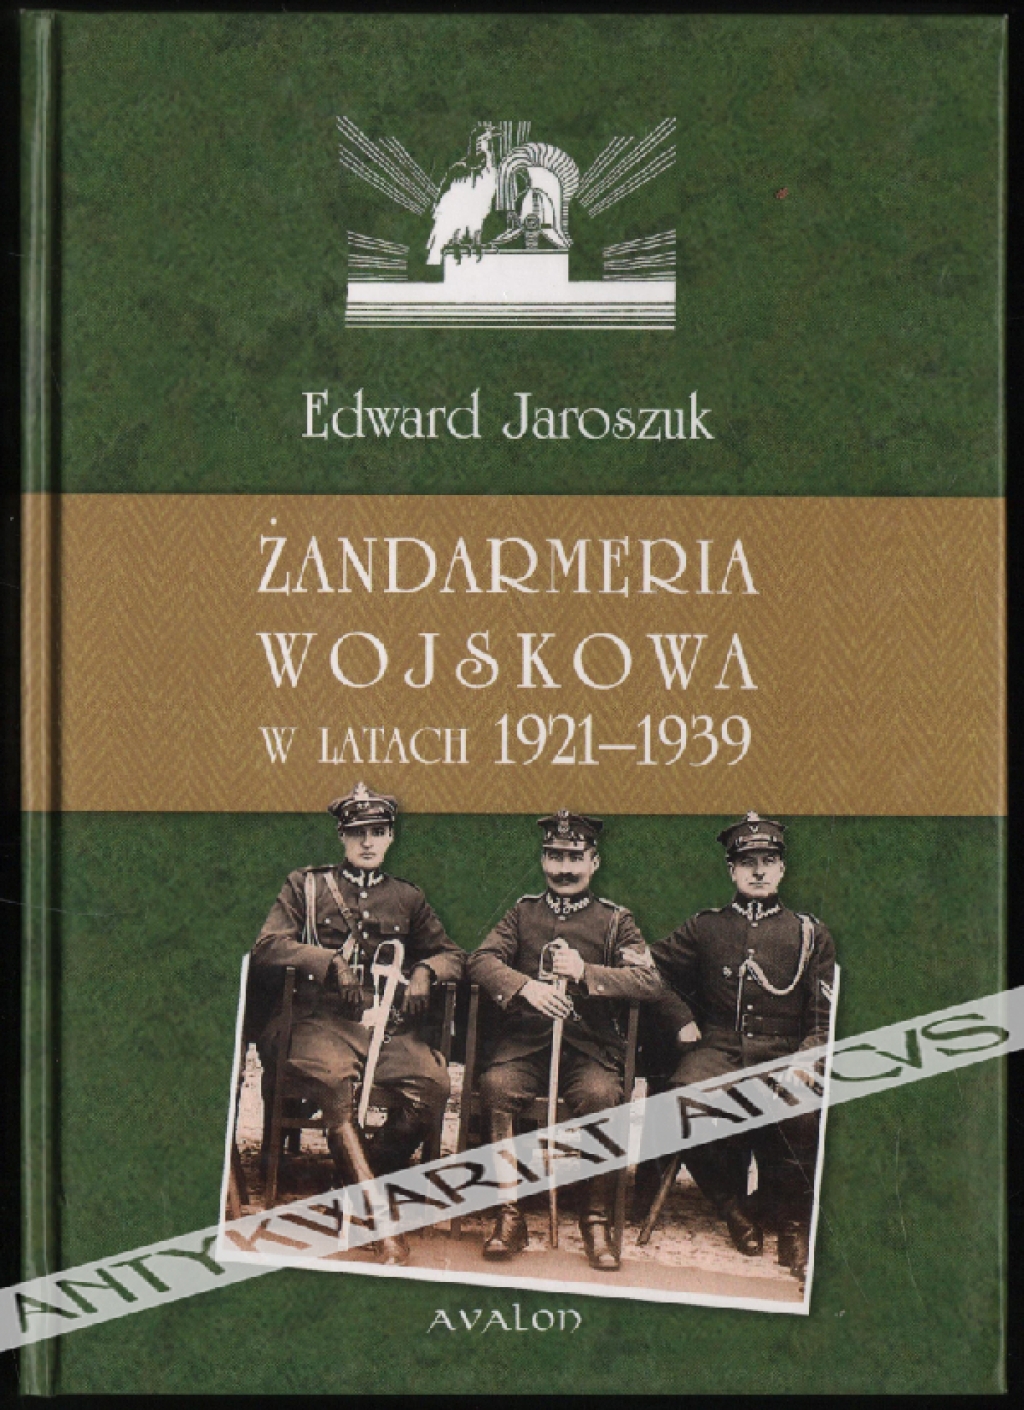 Żandarmeria wojskowa w latach 1921-1939